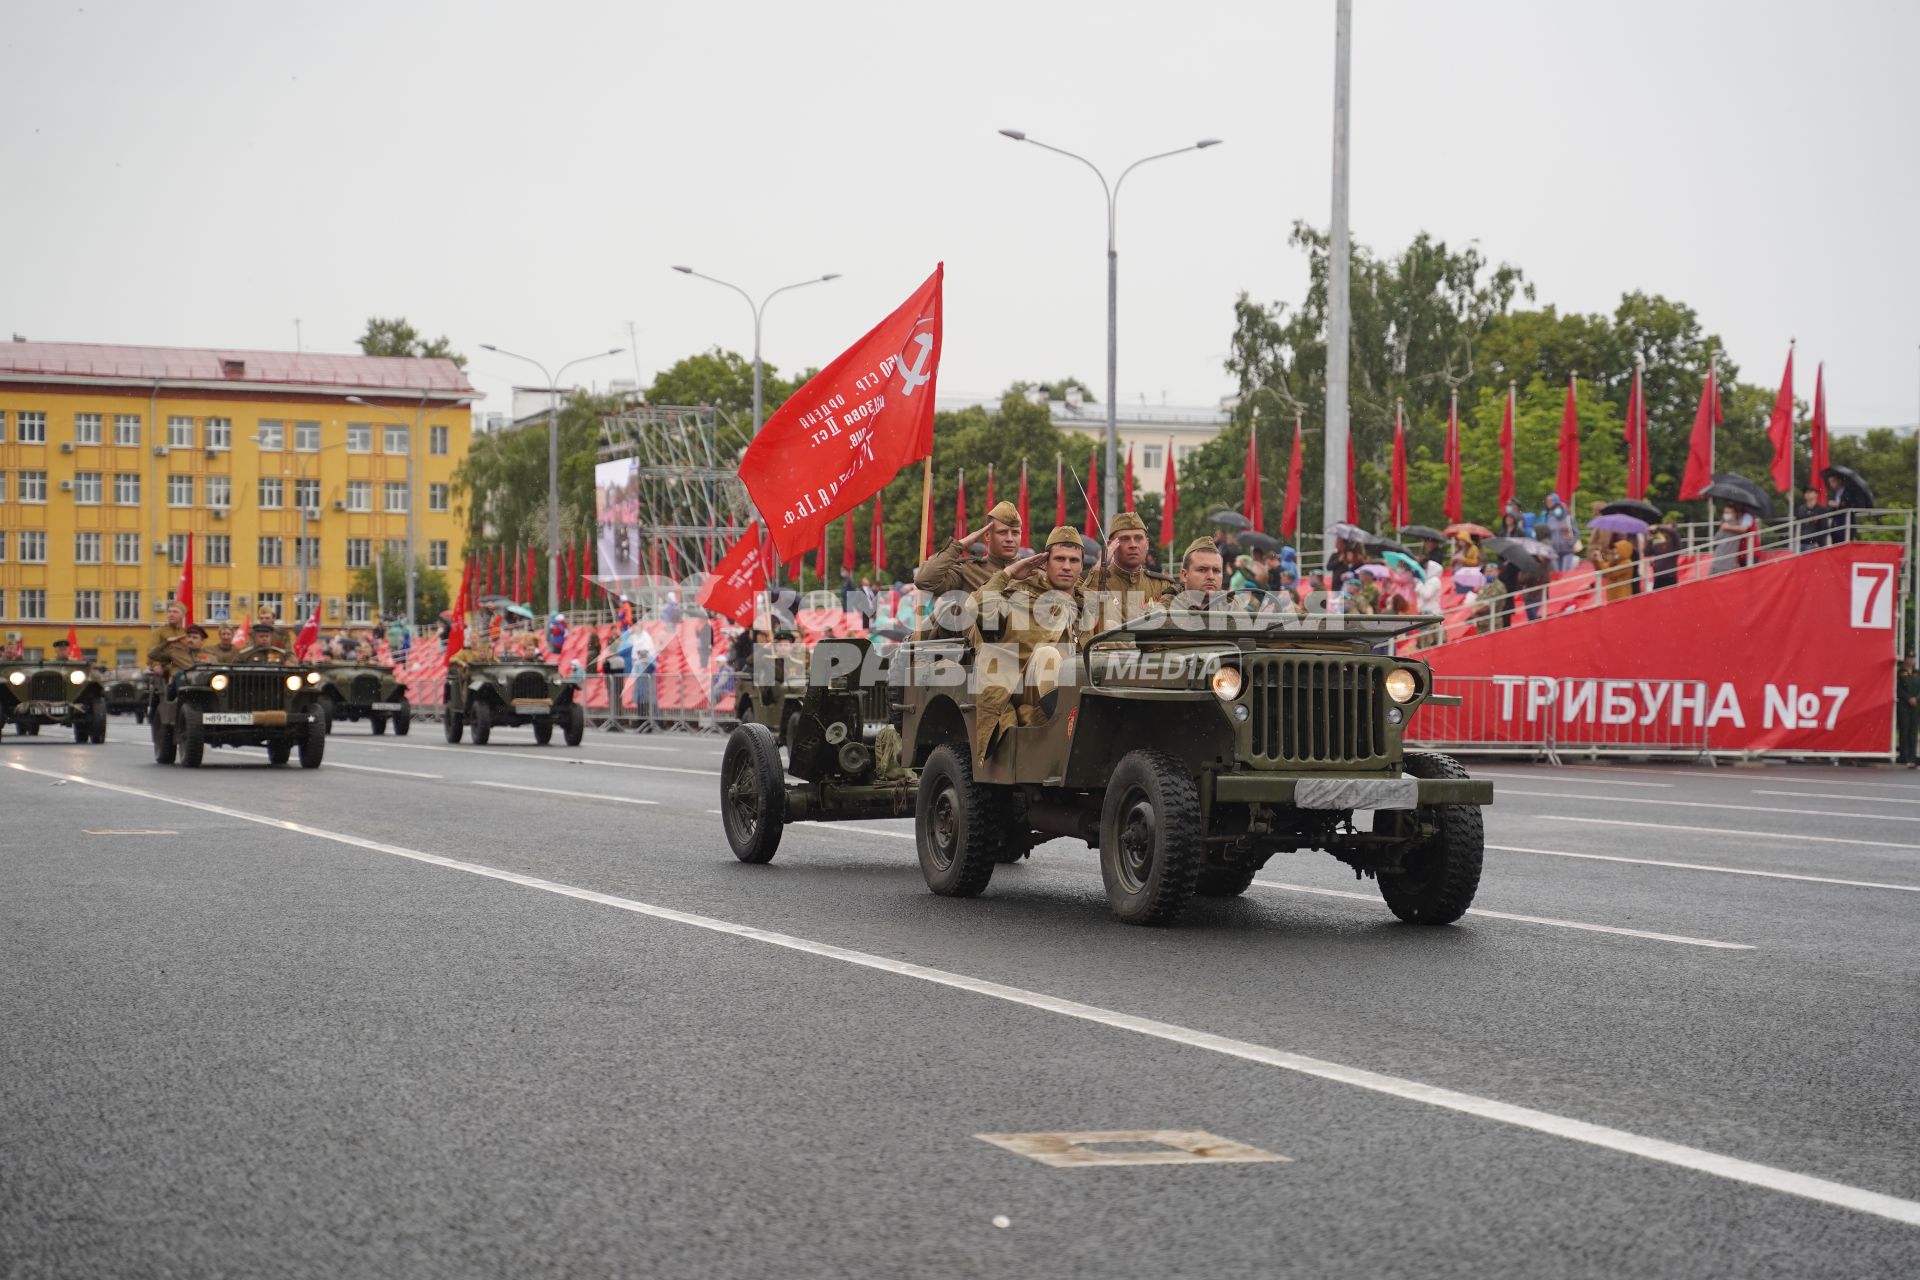 Самара. Военный парад в ознаменование 75-летия Победы в Великой Отечественной войне 1941-1945 годов.